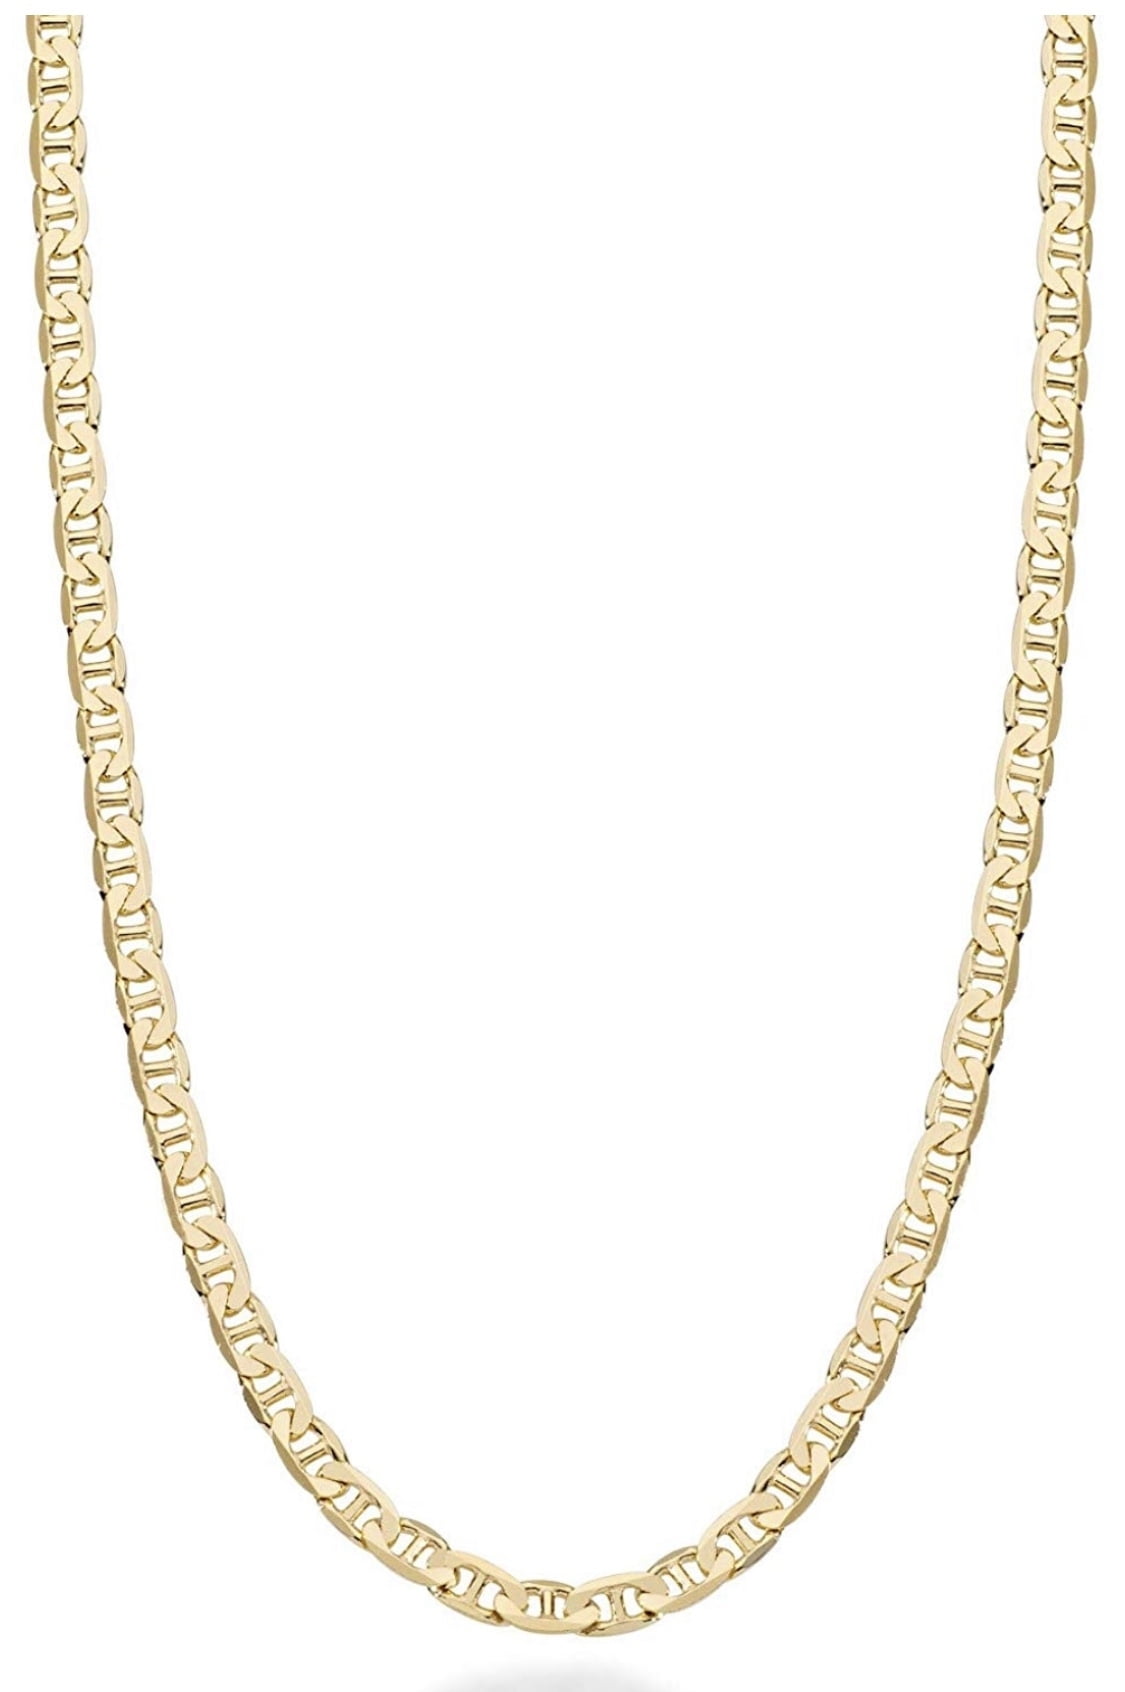 gucci chain necklace